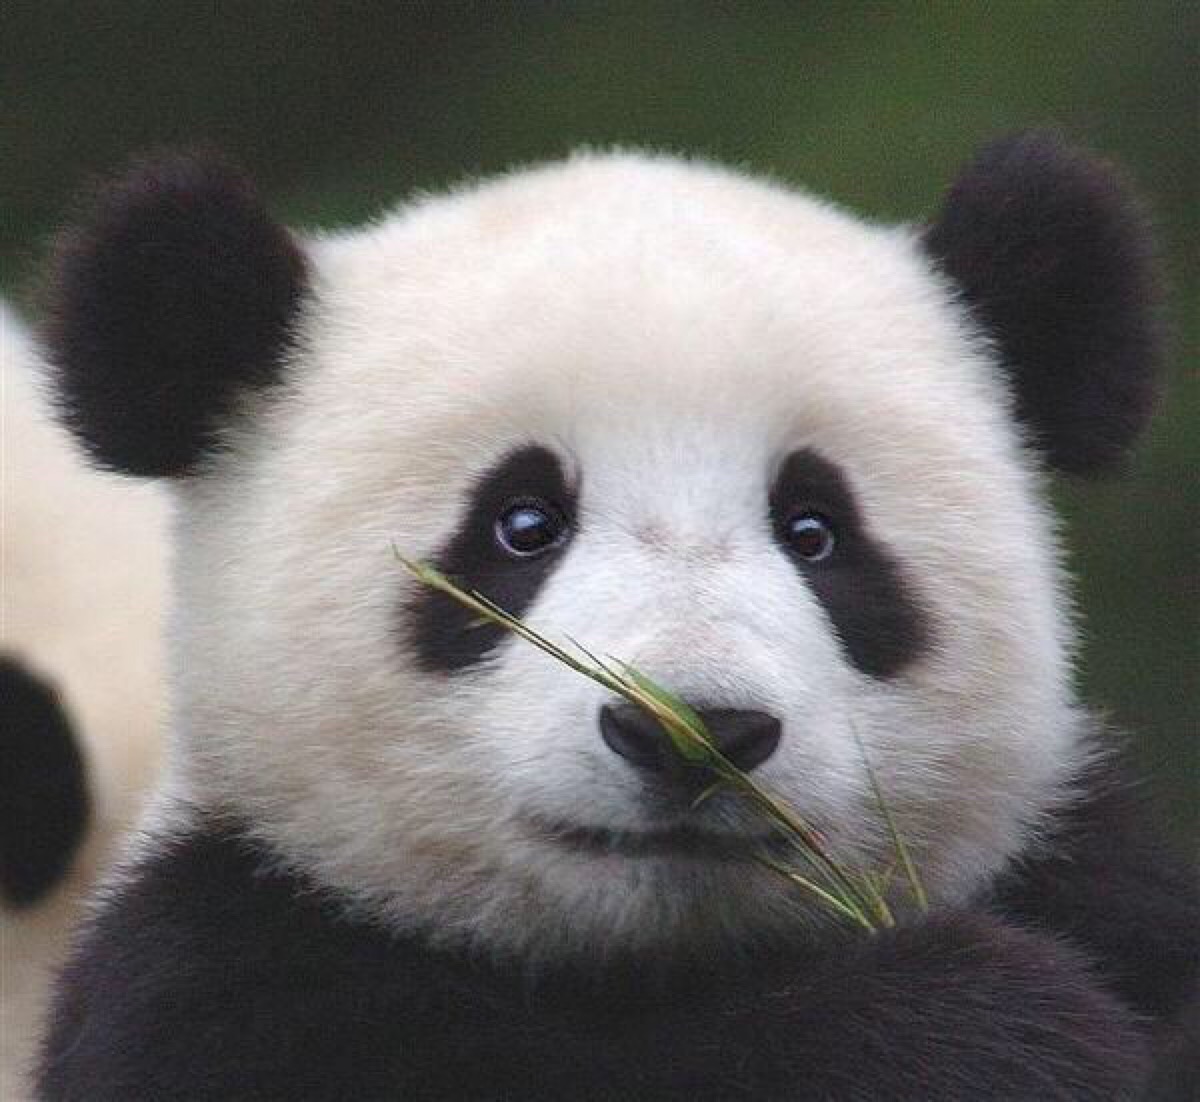 大熊猫福宝 - 高清图片，堆糖，美图壁纸兴趣社区